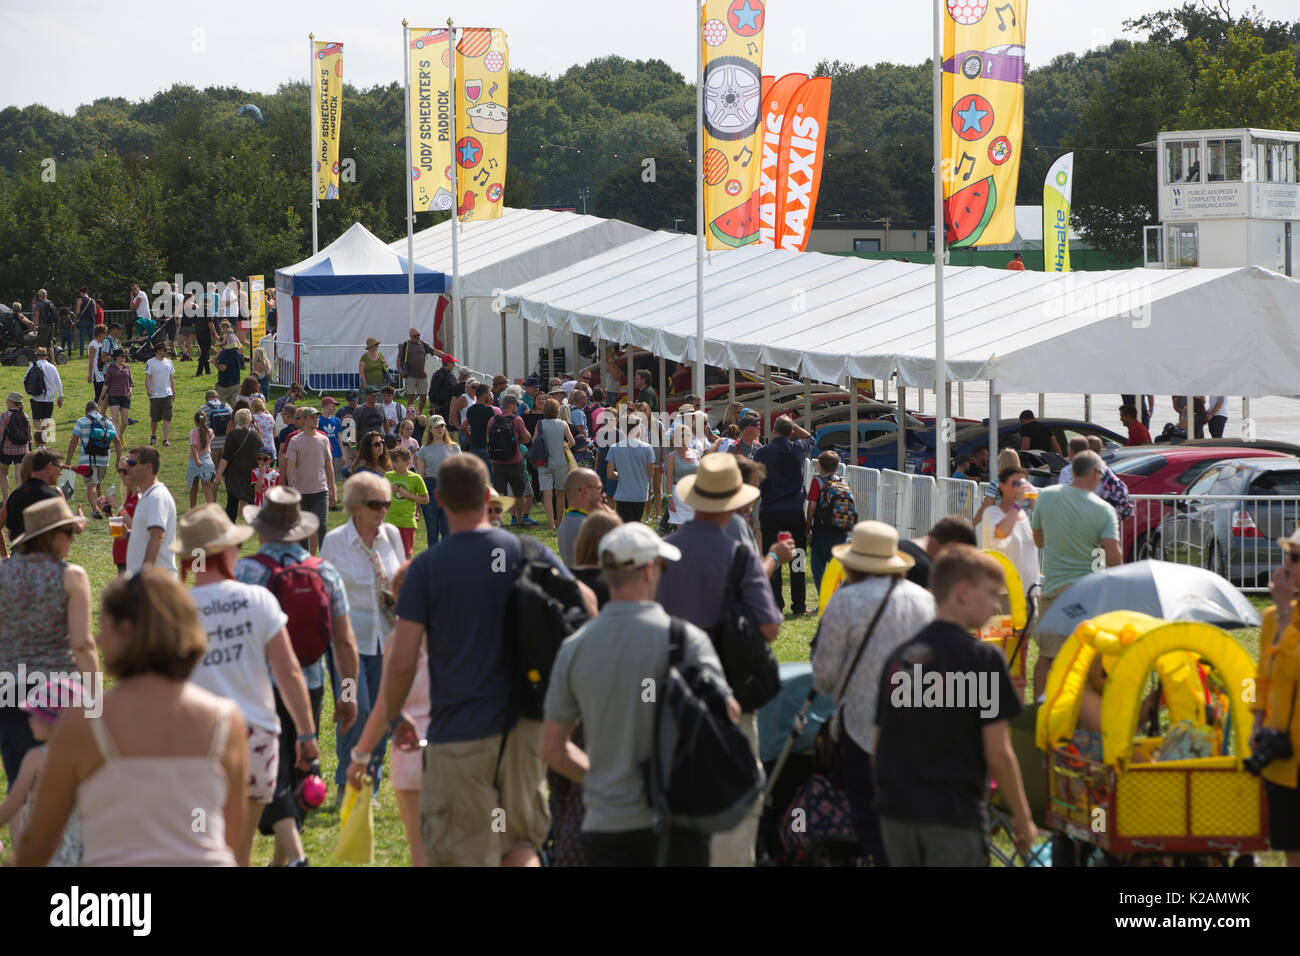 CARFEST Sud 2017, Car-Fest, annuale motoring festival tenutosi in Hampshire, fondata da radio presenter Chris Evans, England, Regno Unito Foto Stock